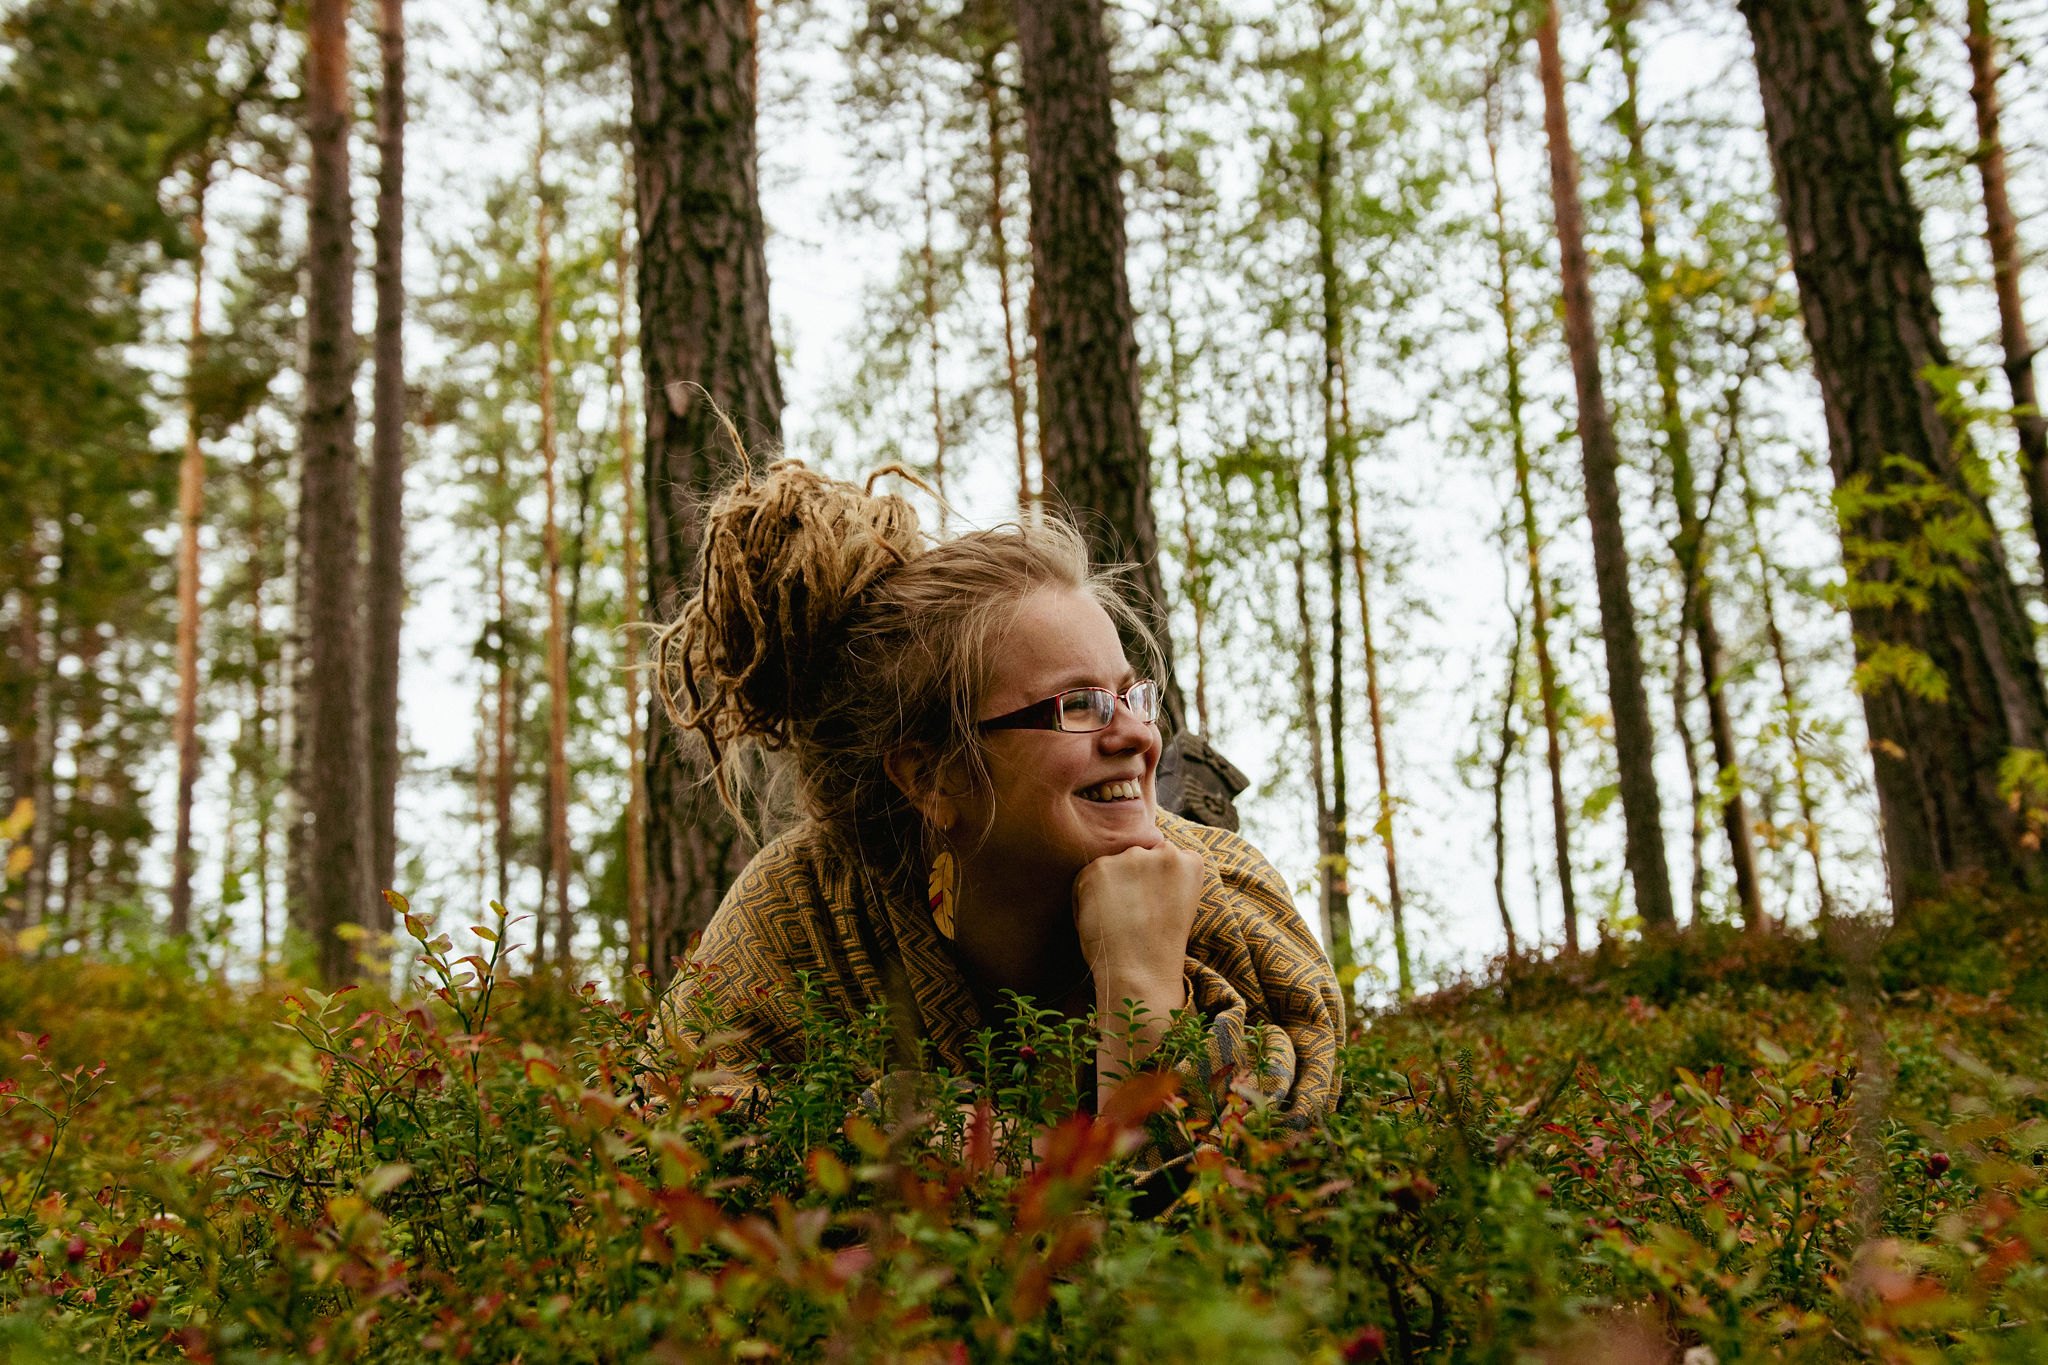 Marianne saimaaLife autumn forest bathing in Saimaa, Finland